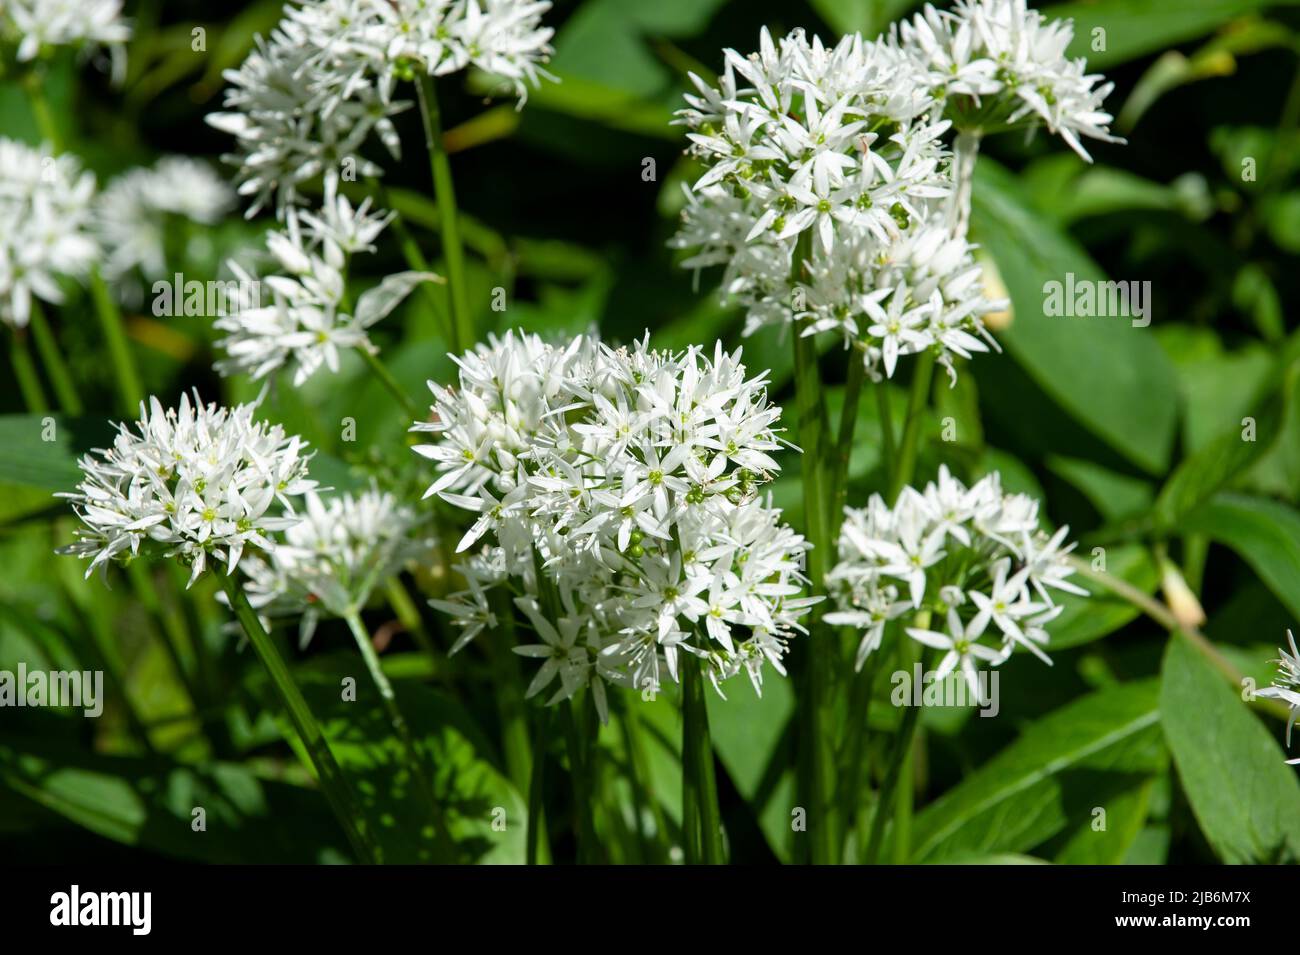 White Flowers of Ramsons or Wild Garlic Plant Allium ursinum Stock Photo